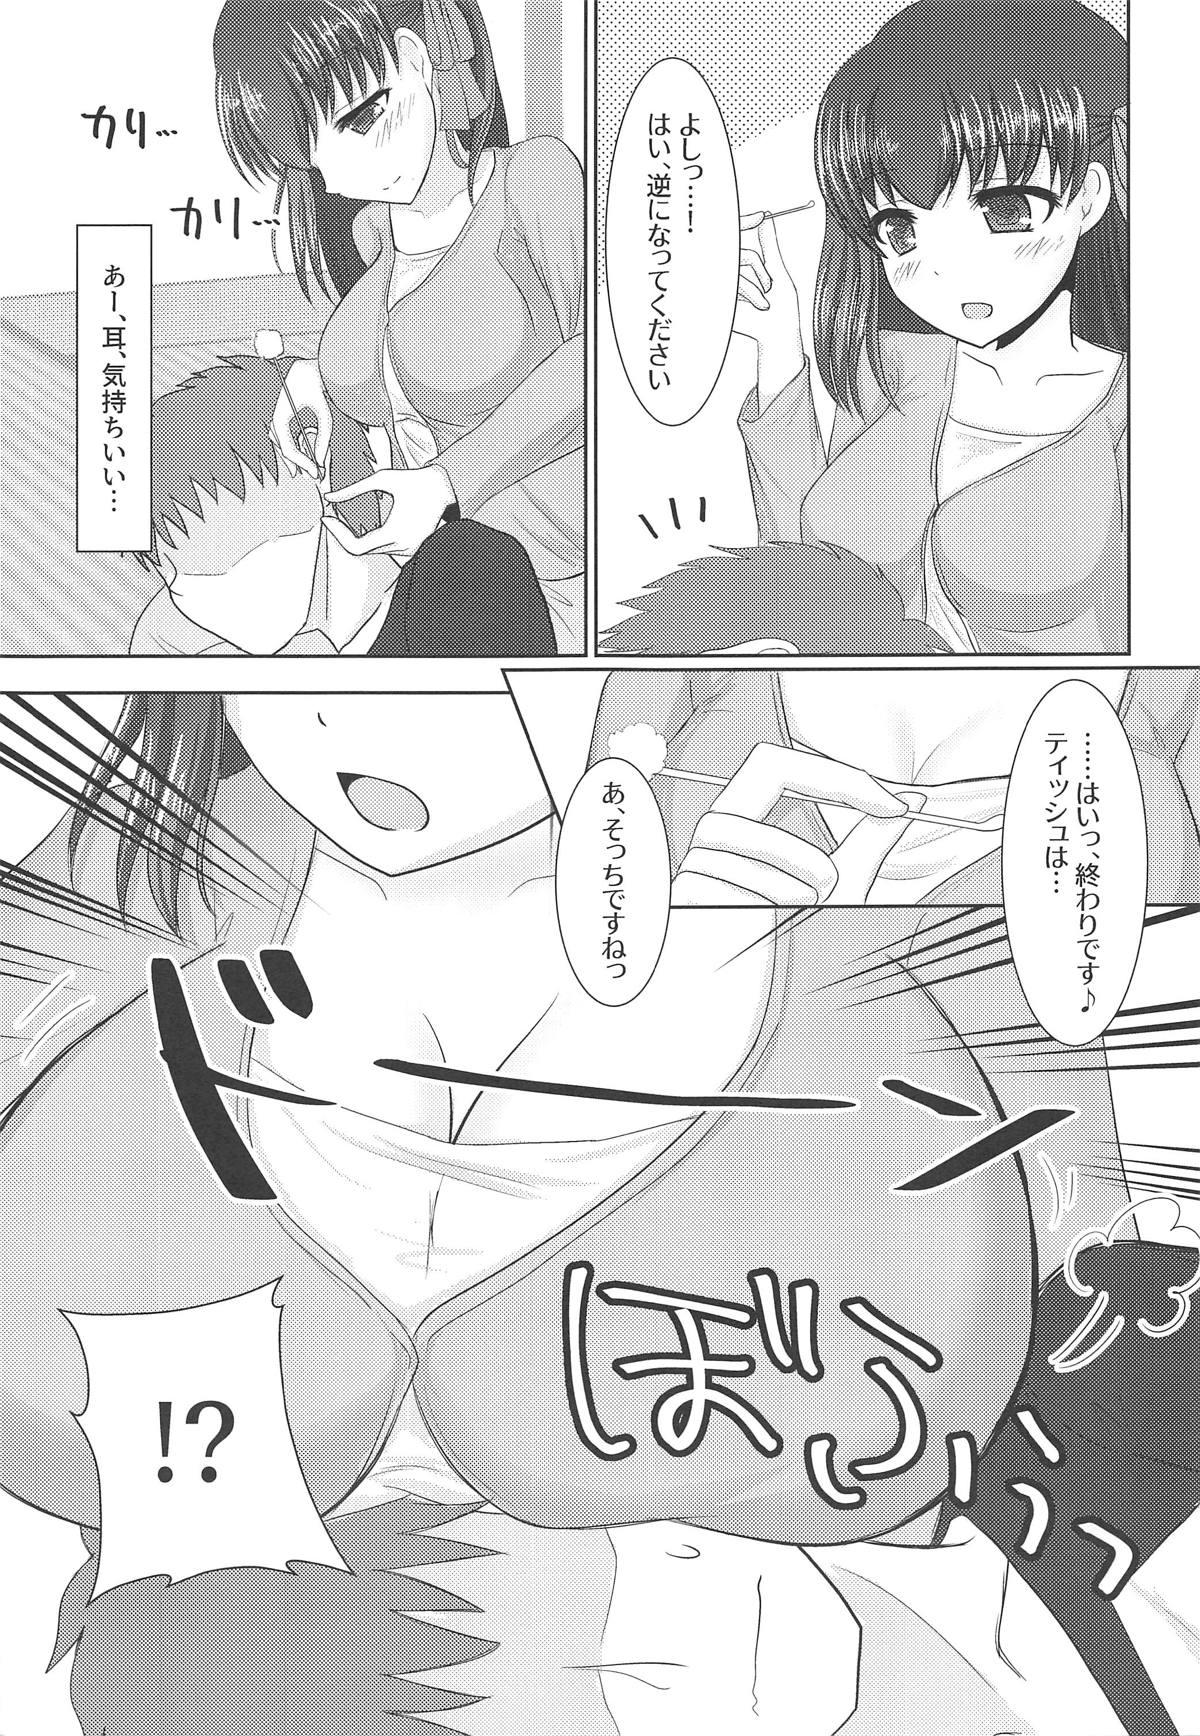 Nerd Hiza no Ue ni Sakura - Fate stay night Ecchi - Page 6